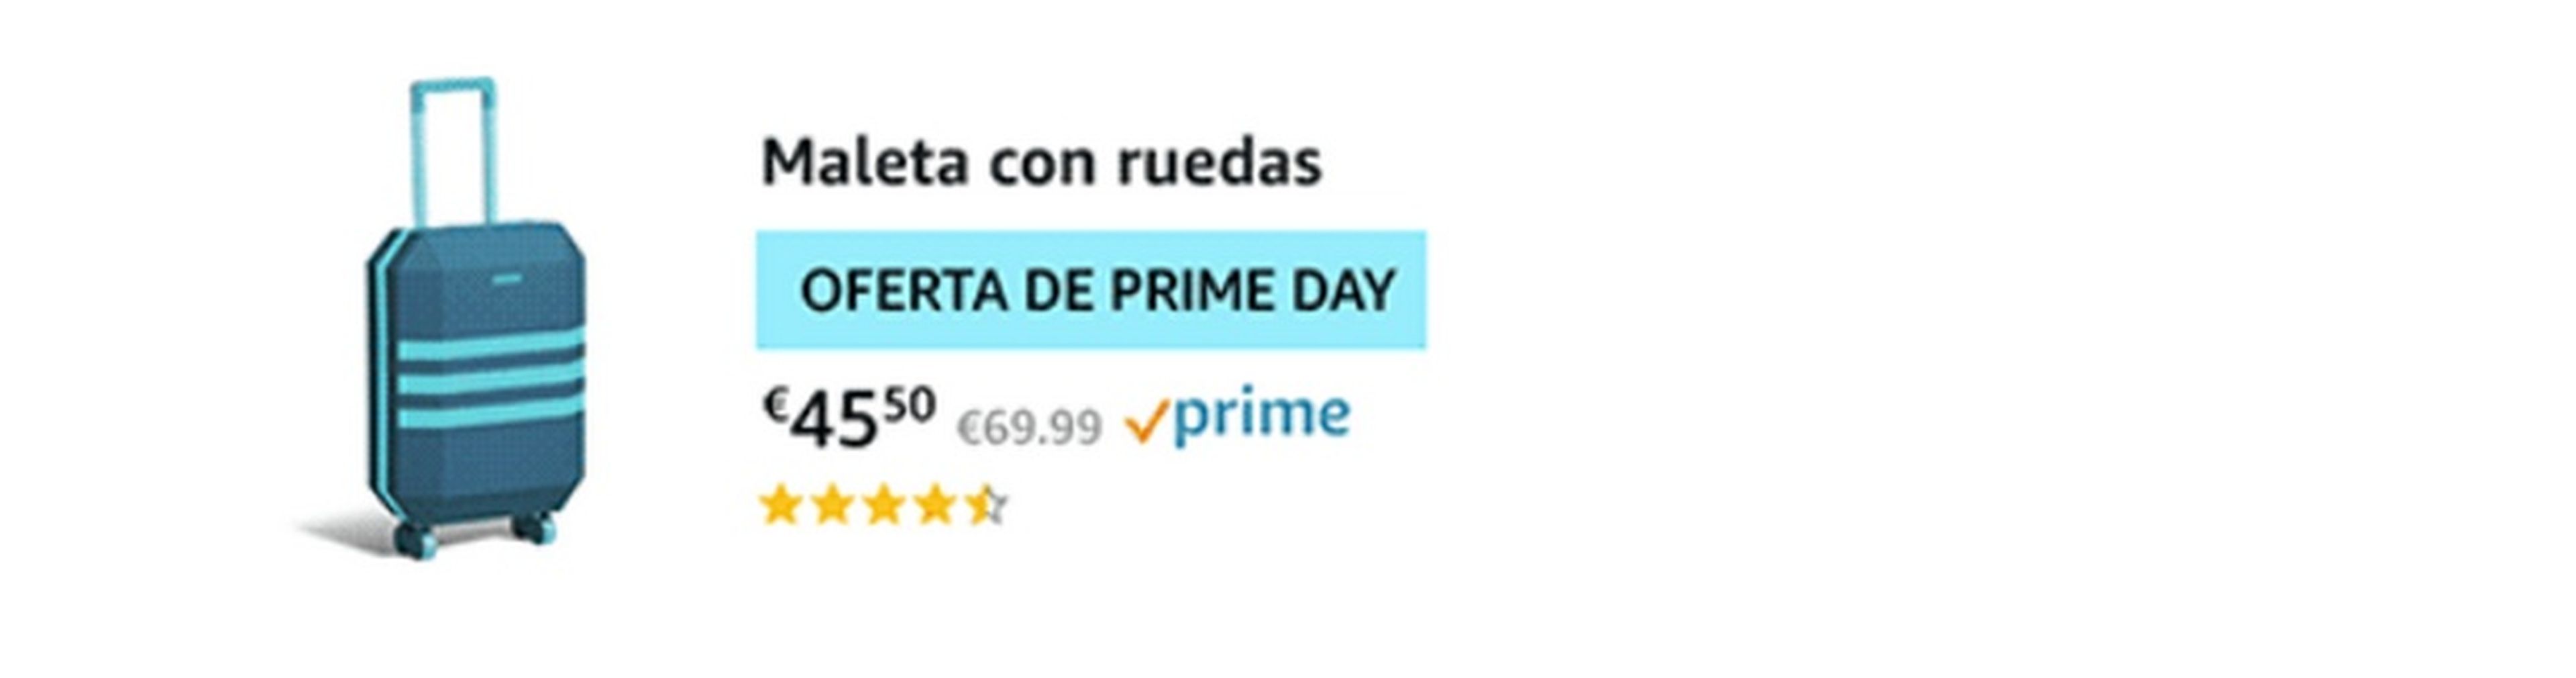 Trucos para comprar más barato en el Amazon Prime Day 2018